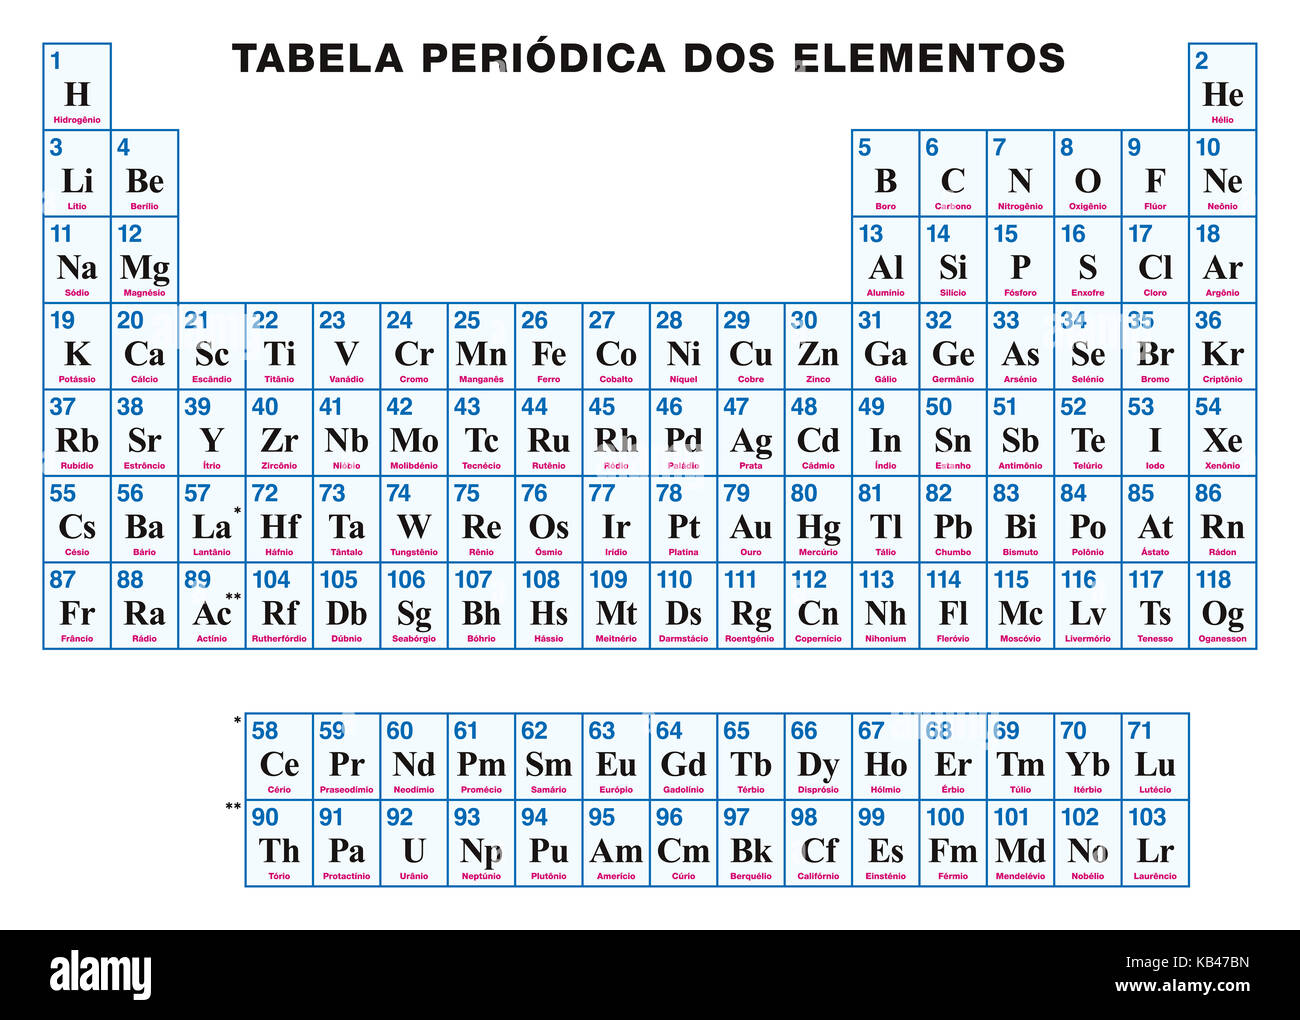 Tableau périodique des éléments. portugais. arrangement tabulaire des éléments chimiques de numéro atomique, symboles et noms. 118 éléments confirmés. Banque D'Images